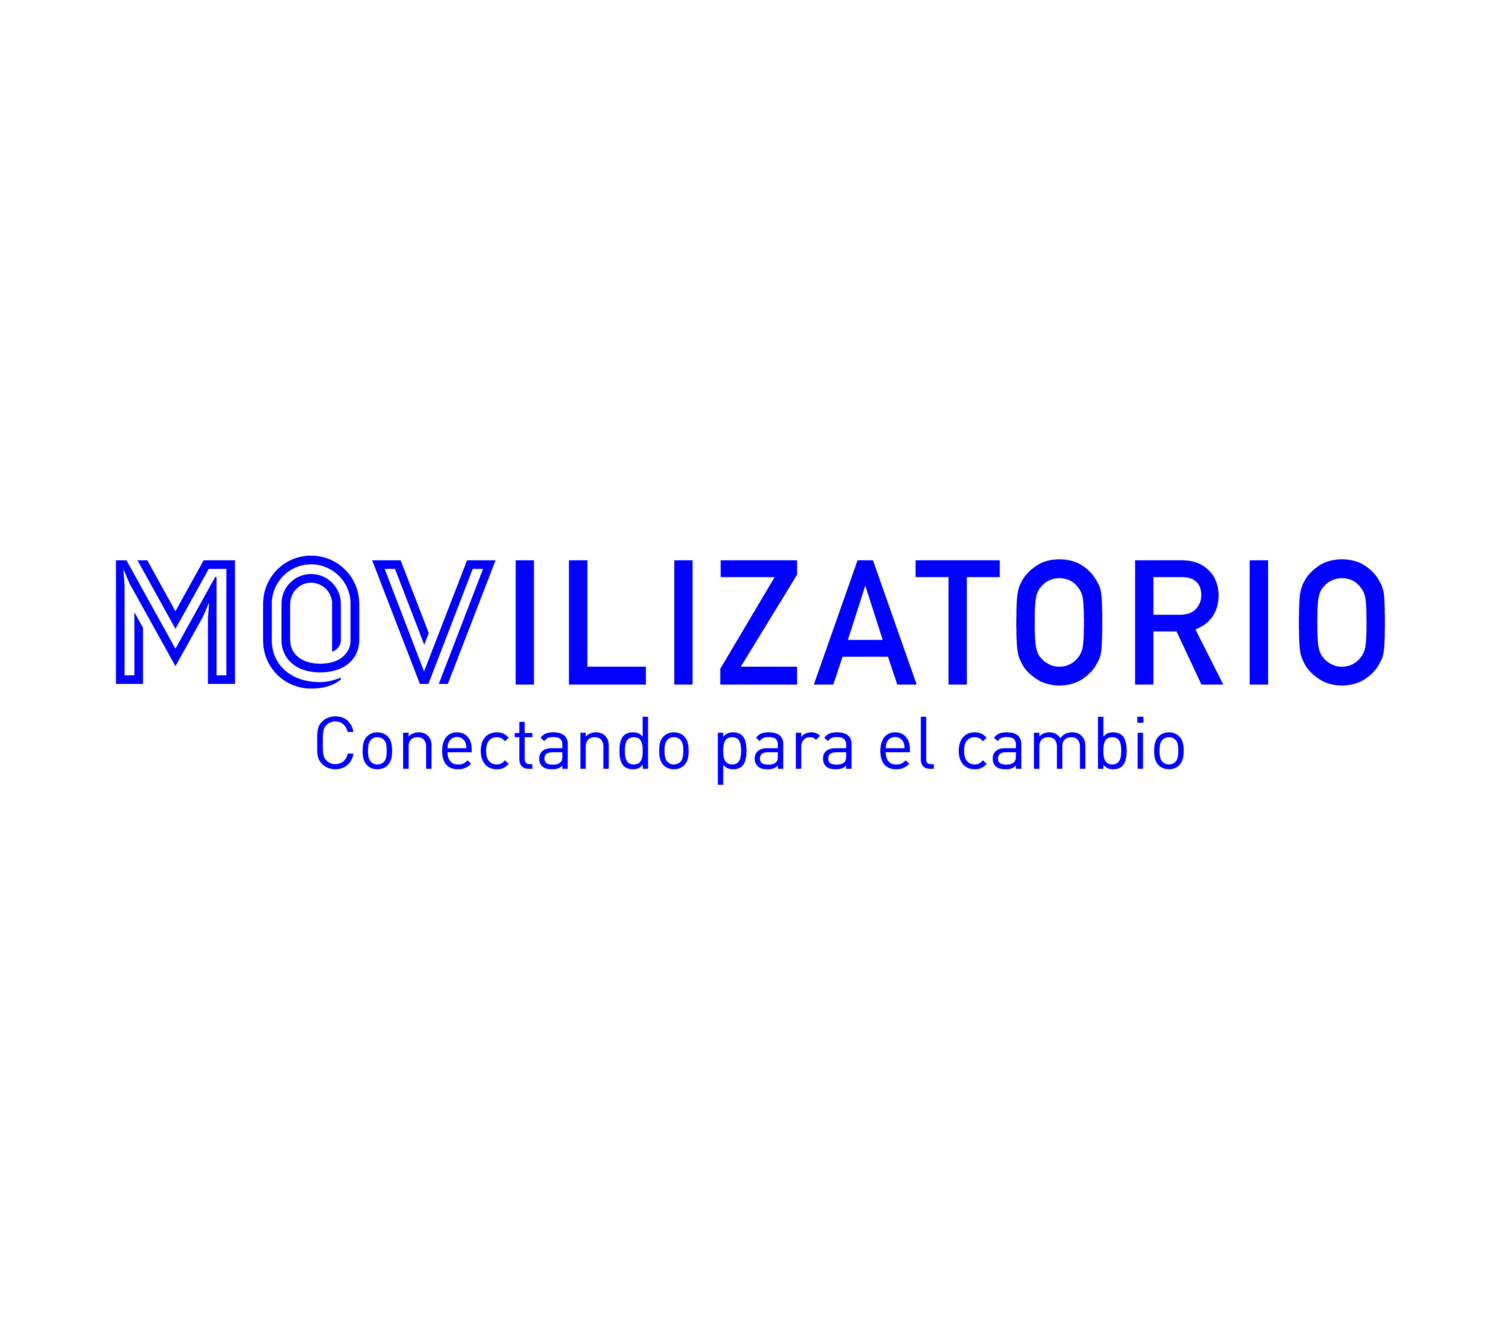 movilizatorio logo